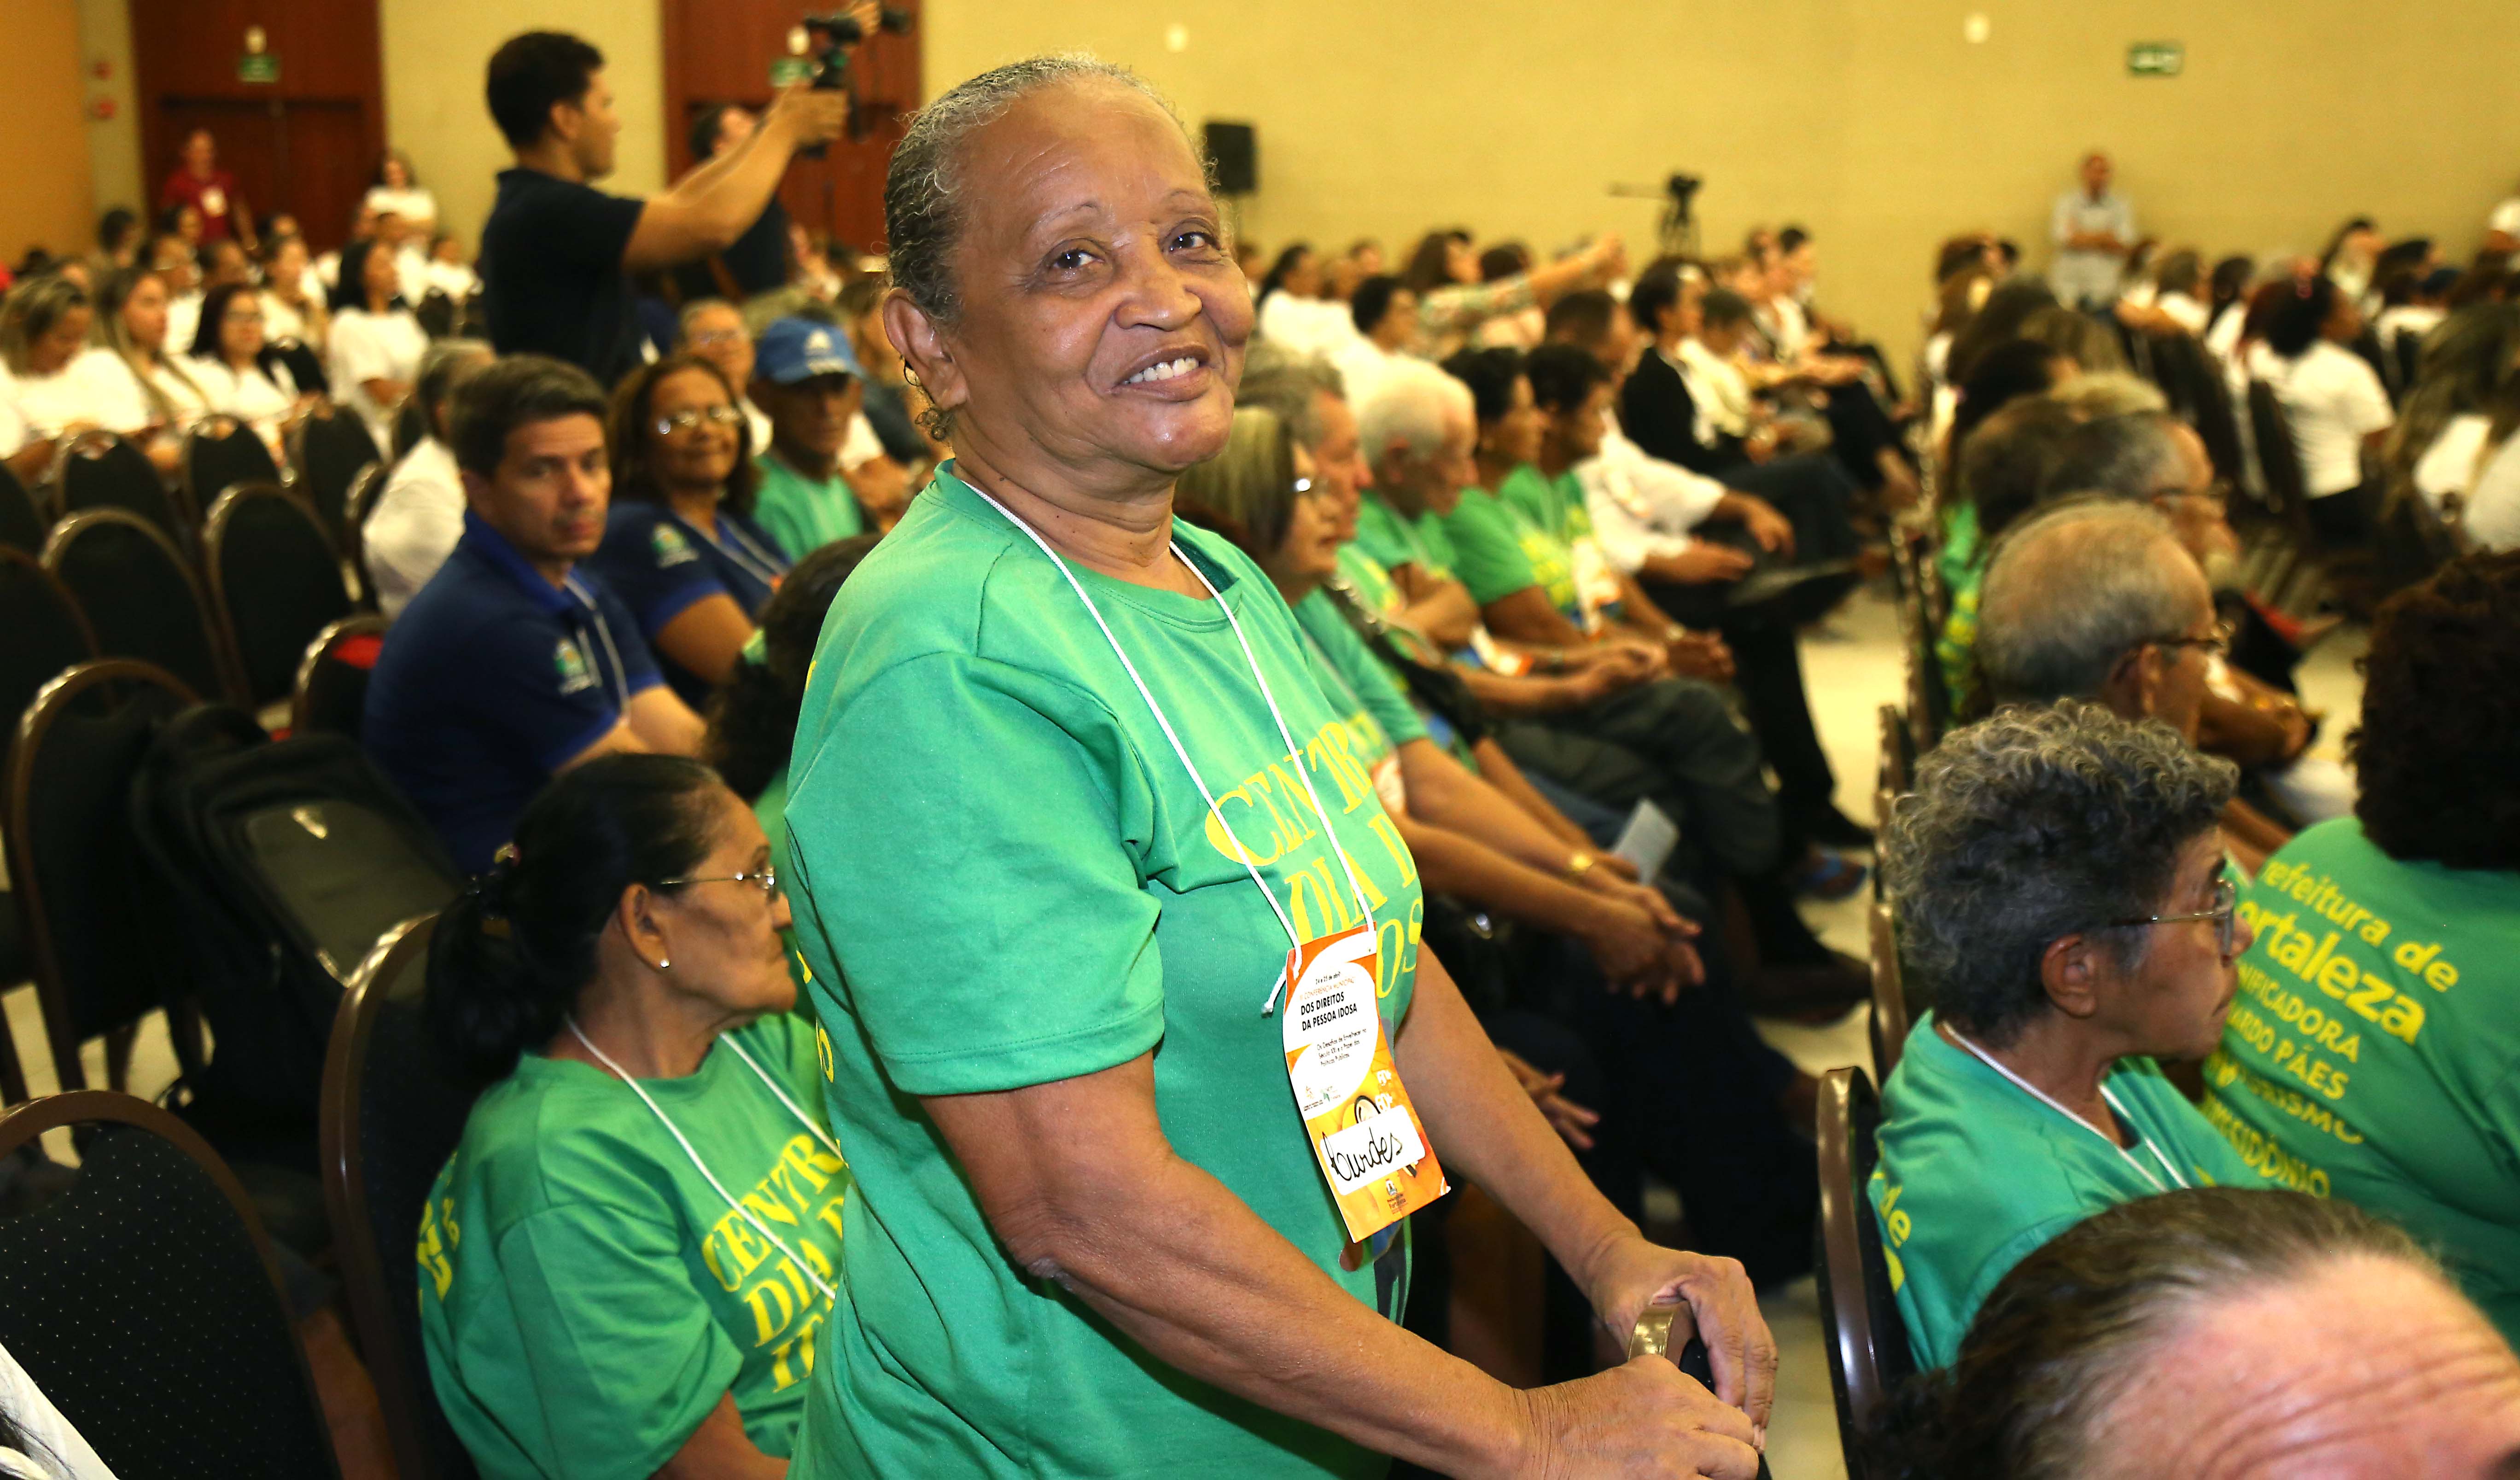 A aposentada Lourdes Alves posa para foto. Ela está em pé e usa uma blusa verde